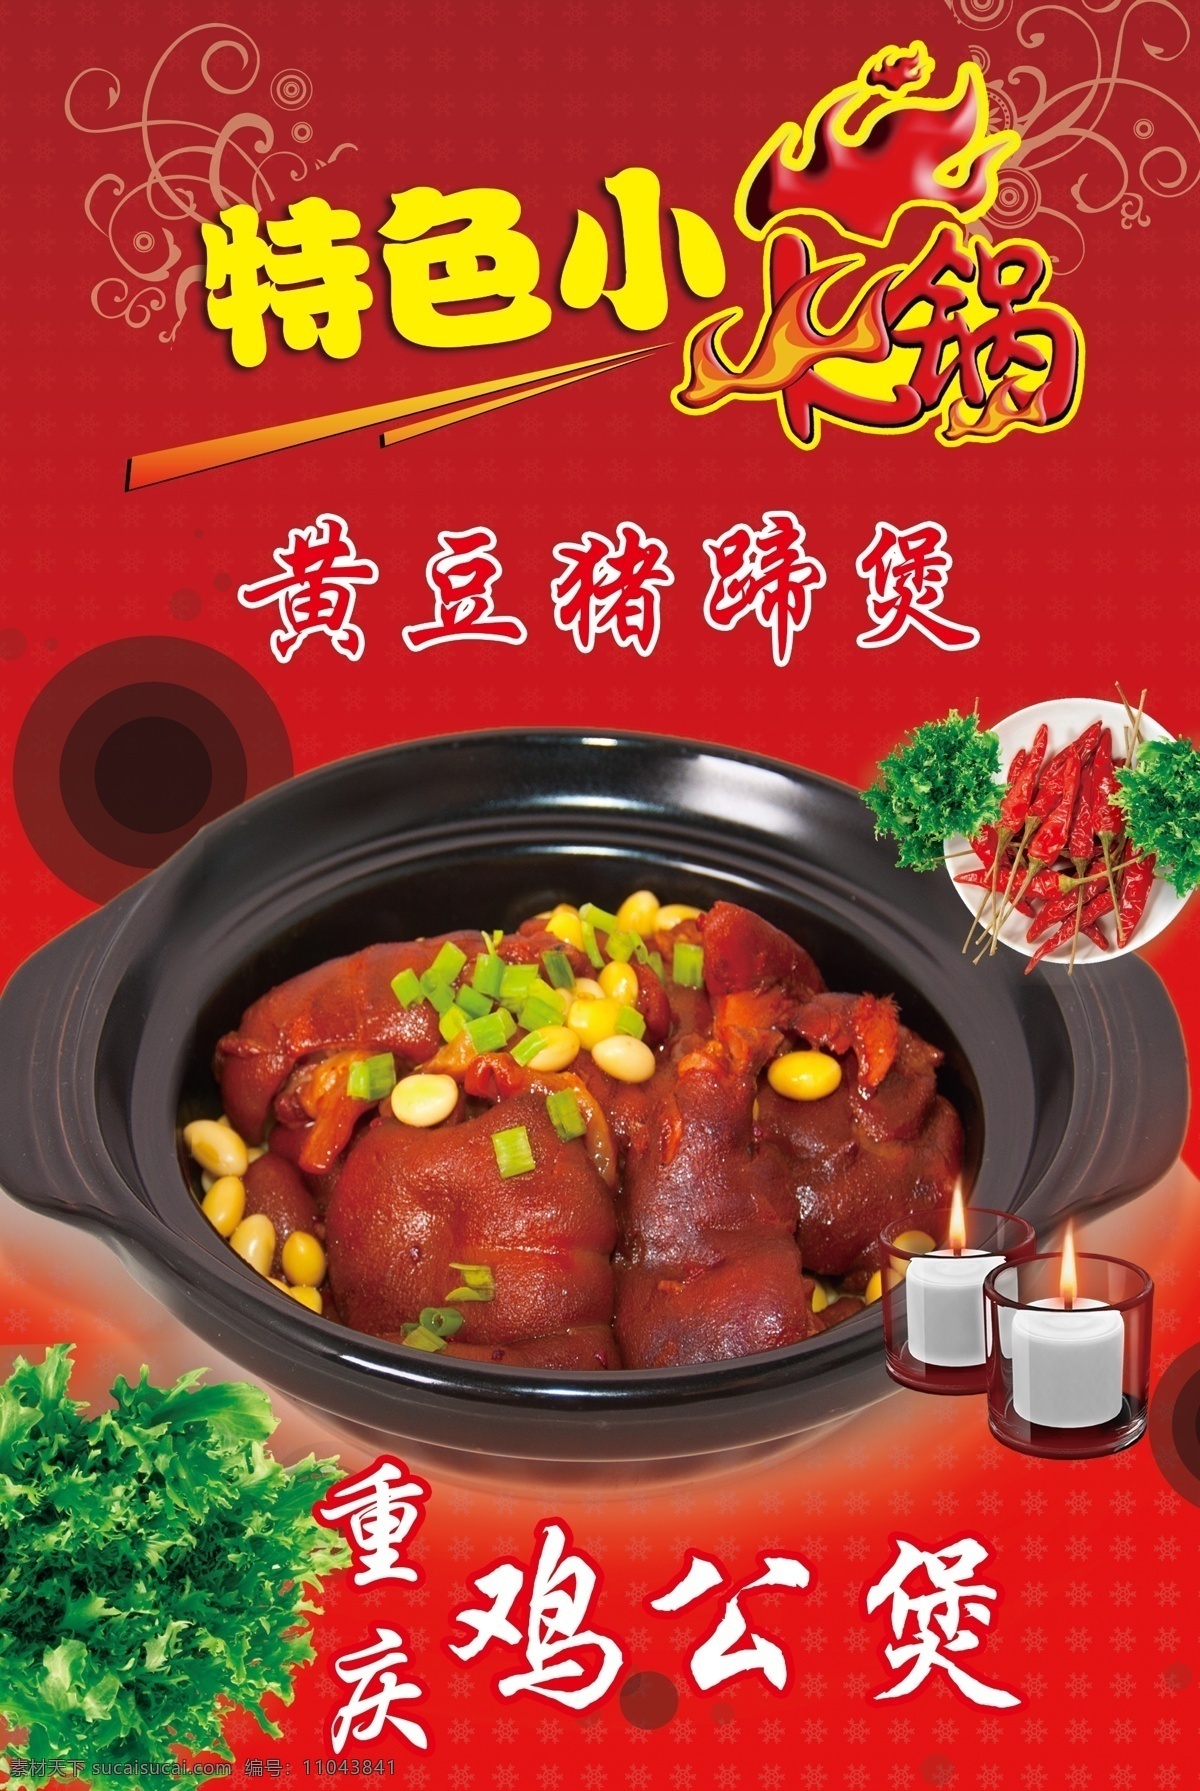 重庆鸡公煲 特色小火锅 火锅 鸡公煲 黄豆猪蹄煲